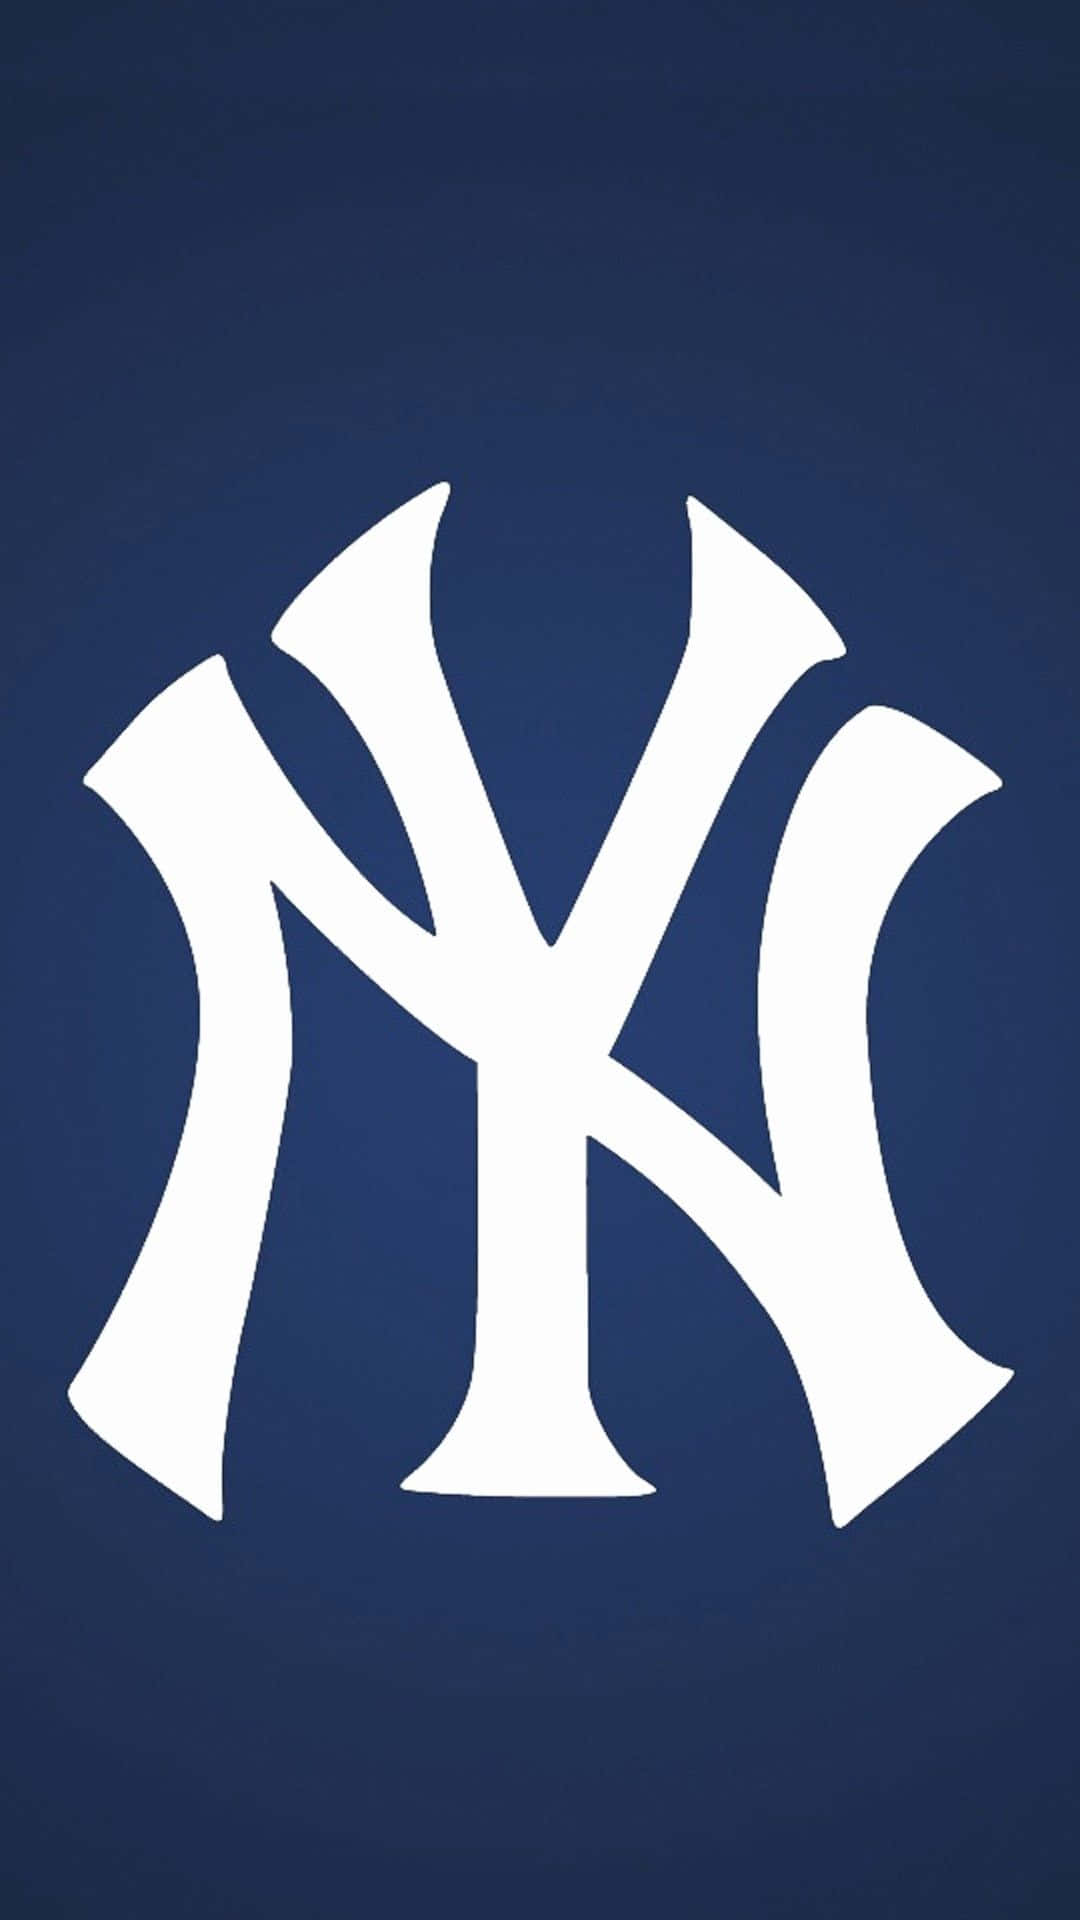 Rappresentala Tua Squadra Di Baseball Preferita Con Una Cover Per Iphone A Tema Yankees. Sfondo